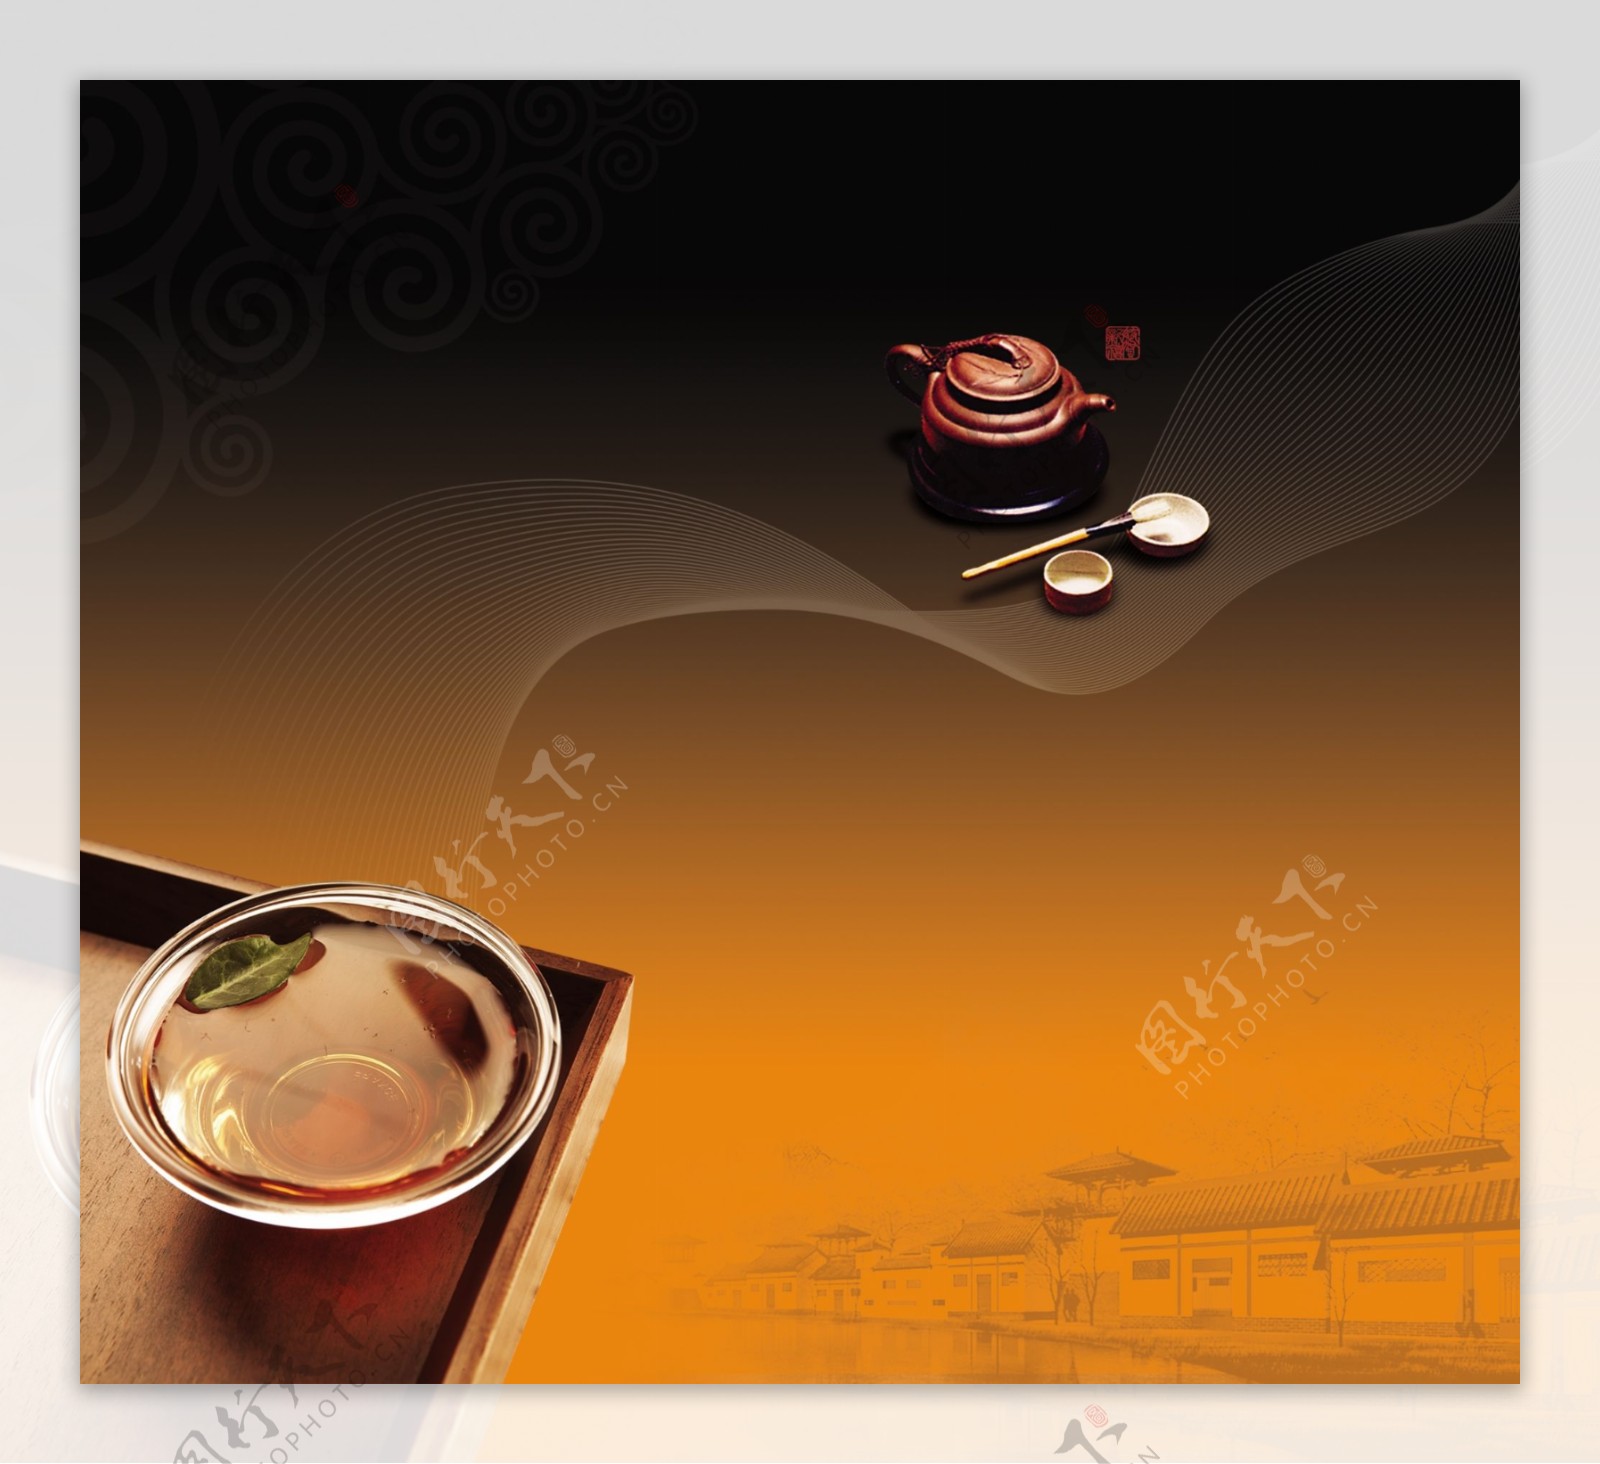 茶具广告图片